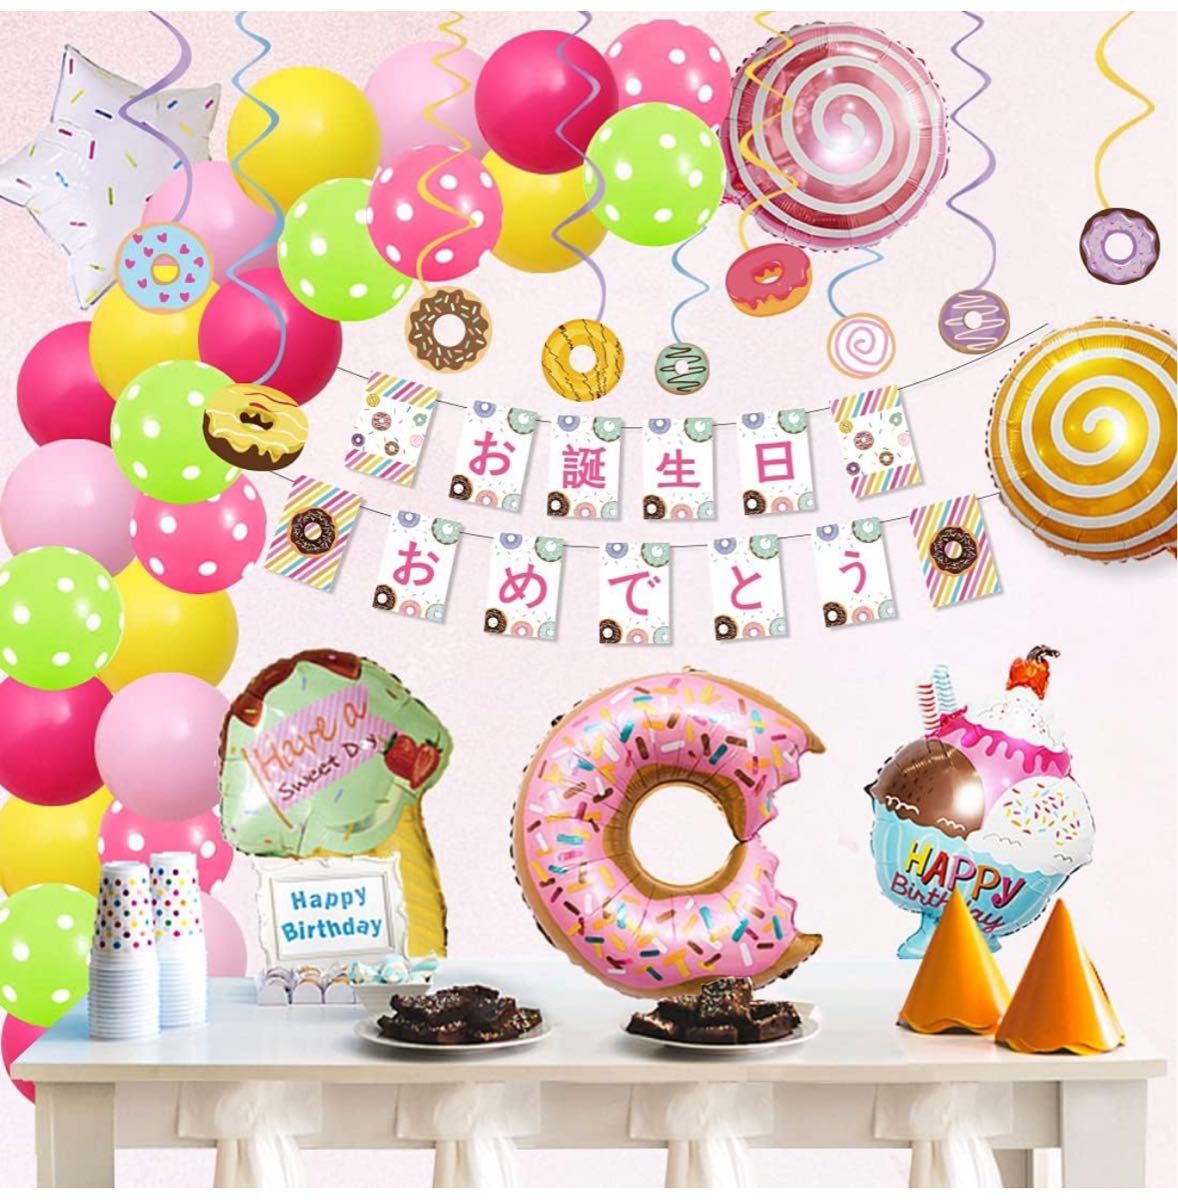 デザート 風船 ドーナツ 誕生日 バルーン キャンディー 誕生日 飾り付け 女の子 バースデー 飾り デコレーション セット